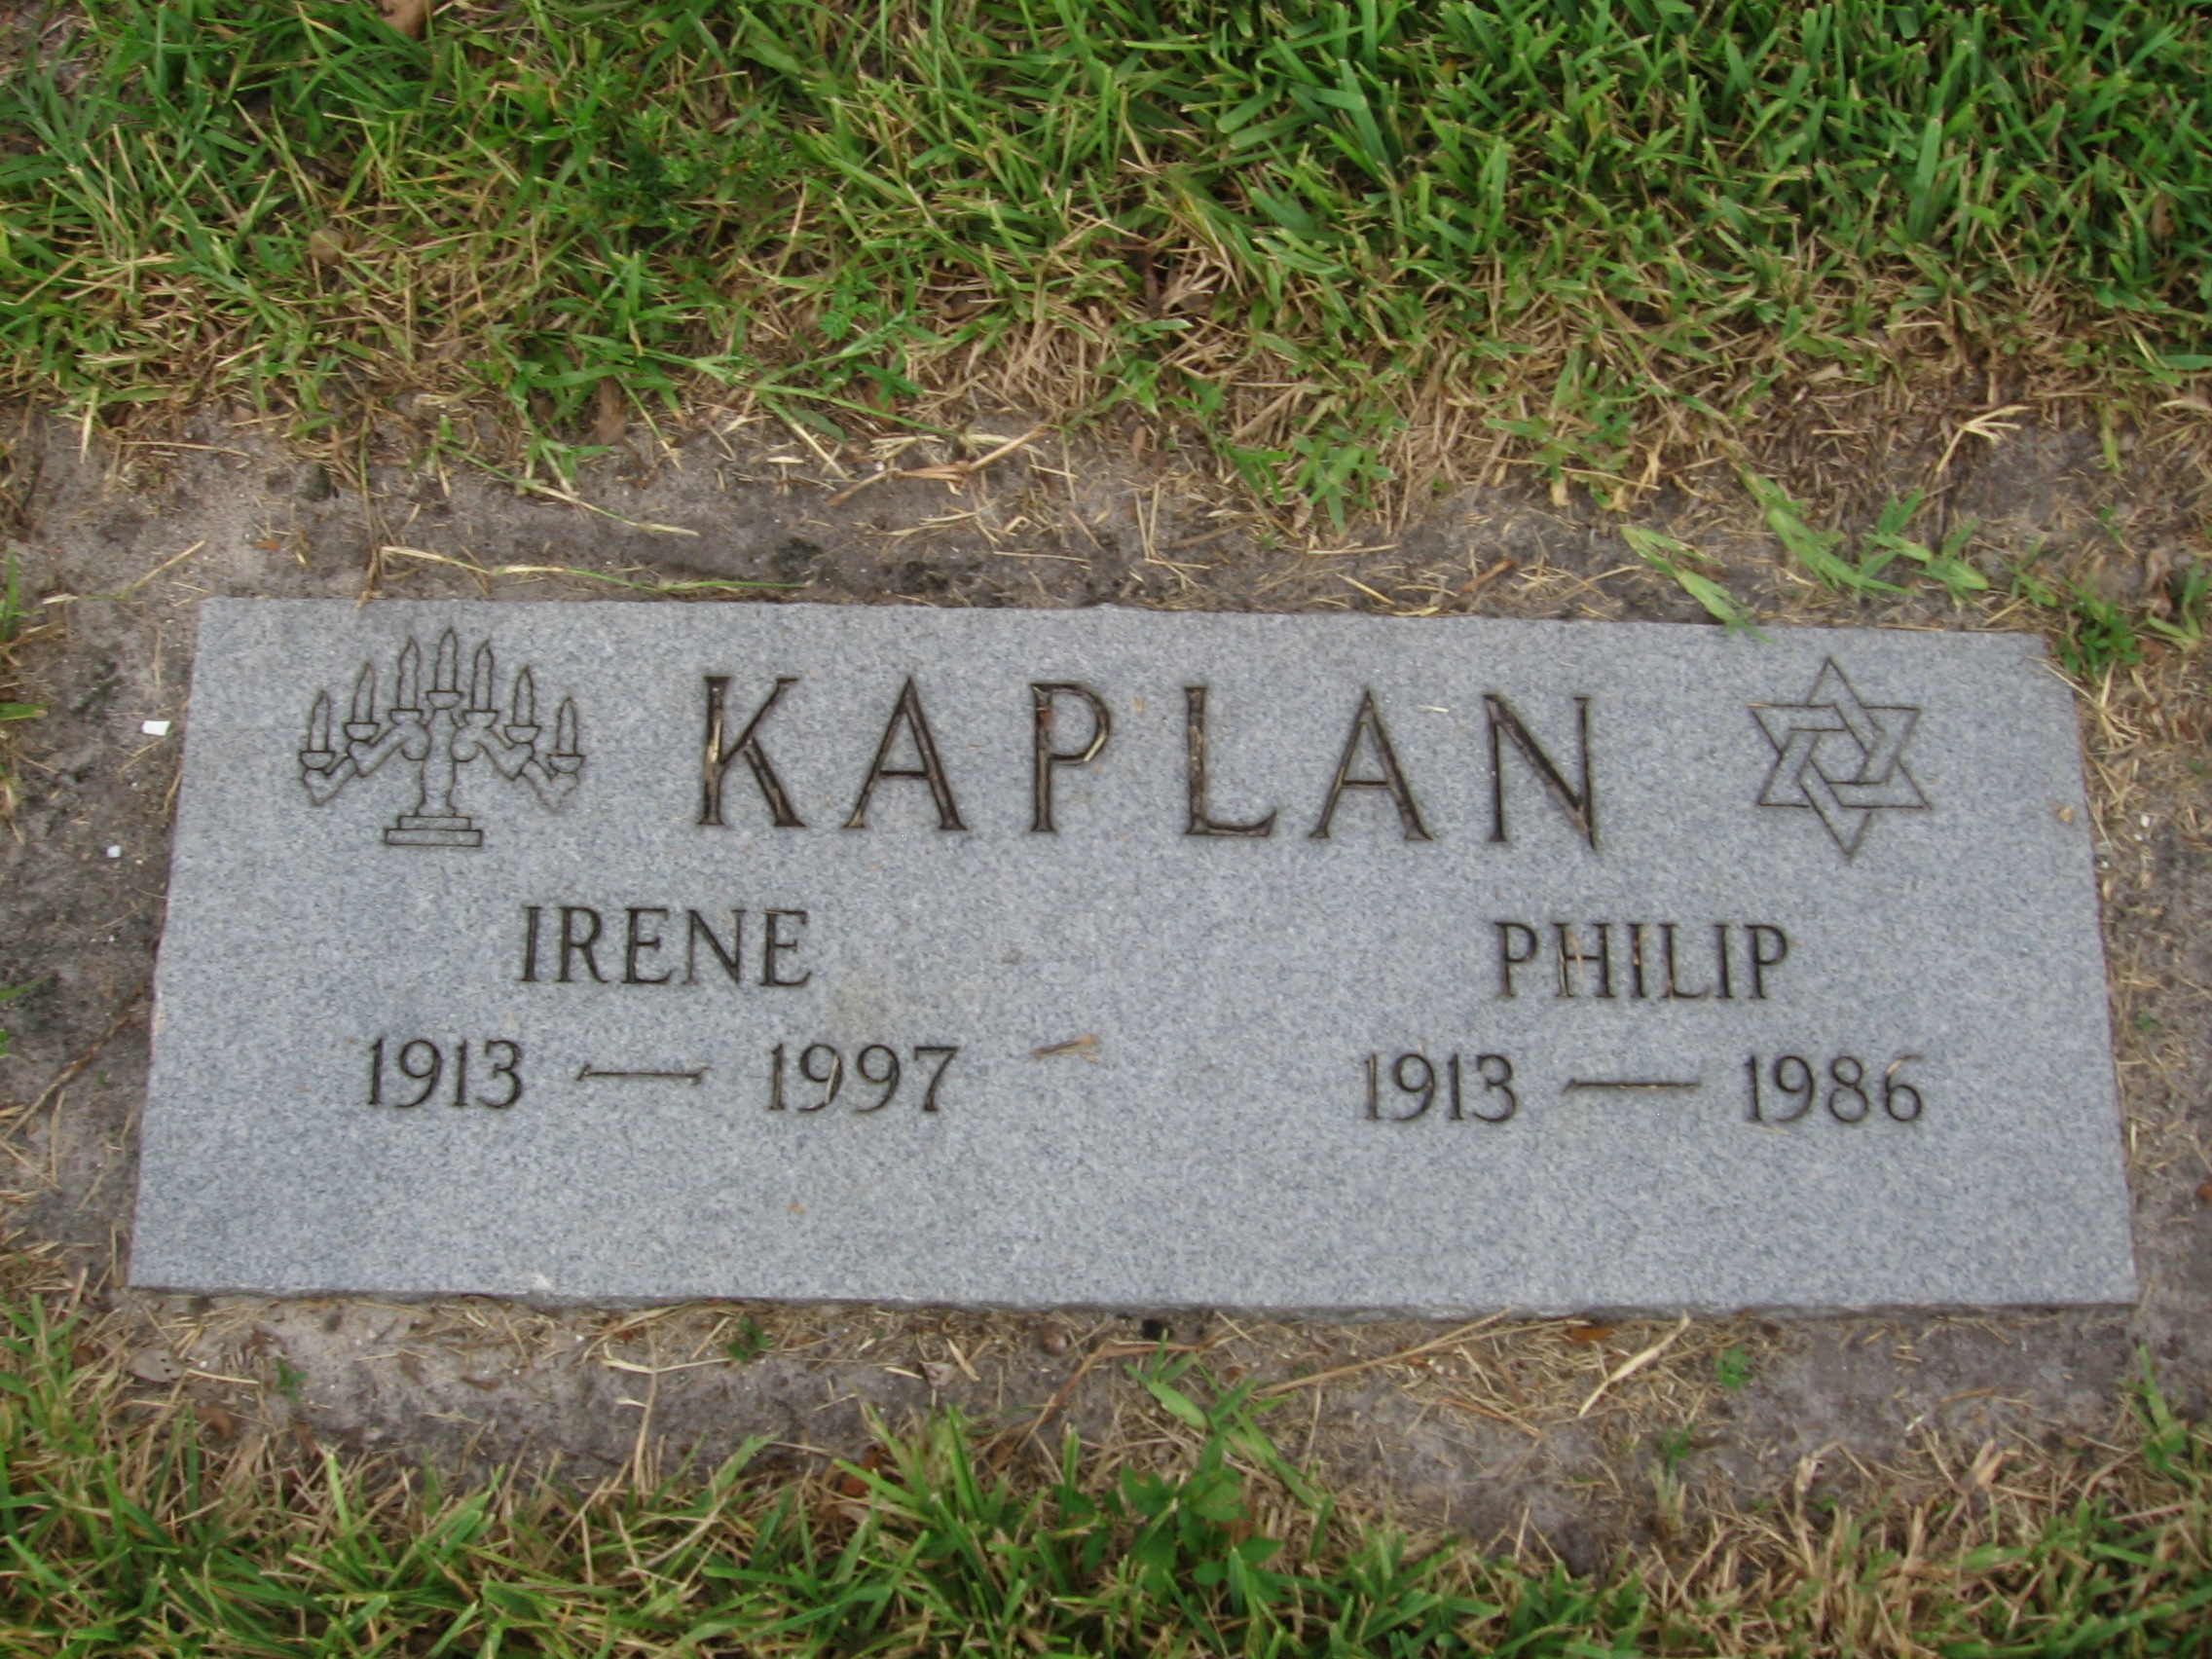 Philip Kaplin